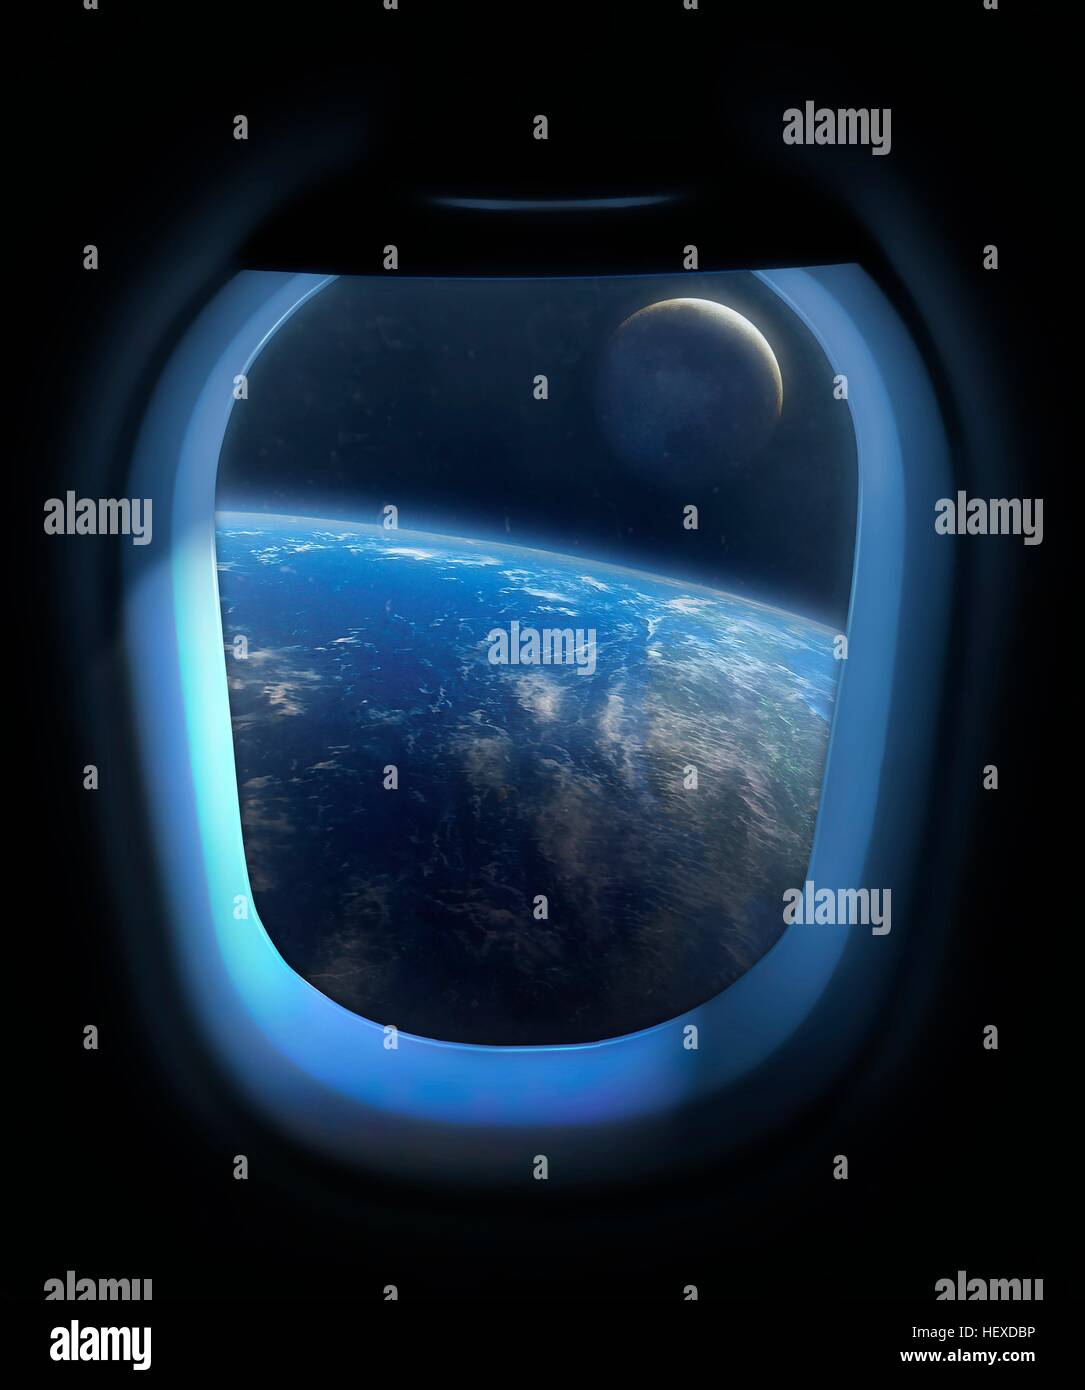 Illustrazione che mostra la terra e la luna dal finestrino di un veicolo spaziale, in futuro. La visualizzazione mostra il Lunar lontano lato direttamente sotto di noi, con la messa a terra nella distanza. Forse in futuro i turisti saranno in grado di godere di una vista come in questo spazio. Foto Stock